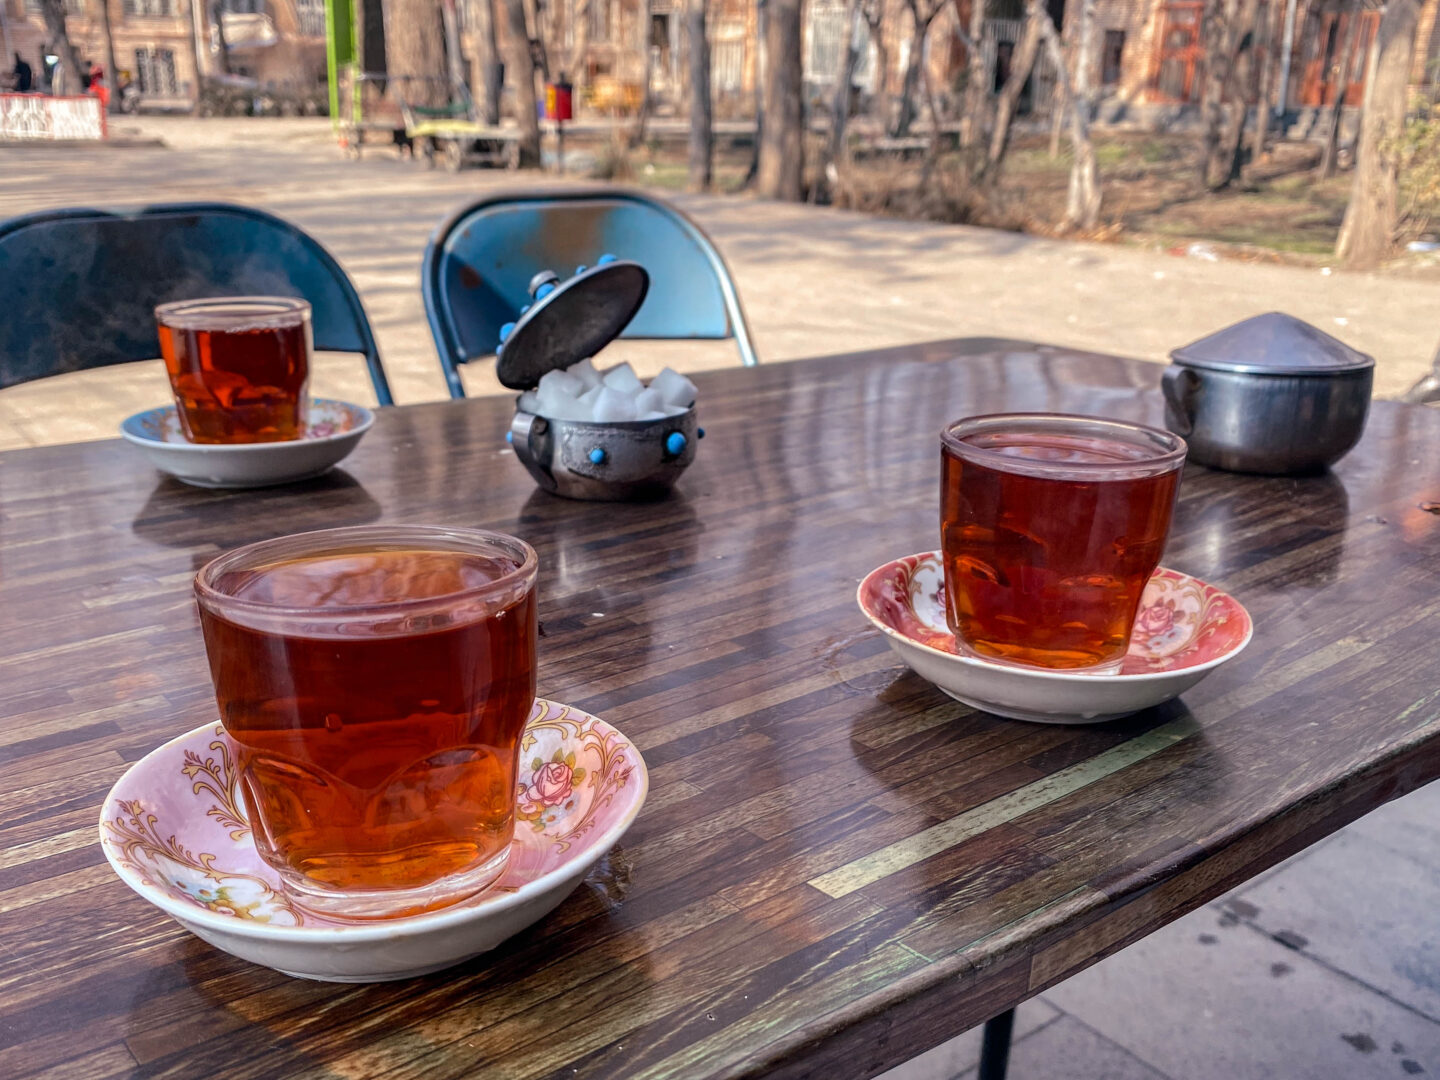 Iran - Tea culture